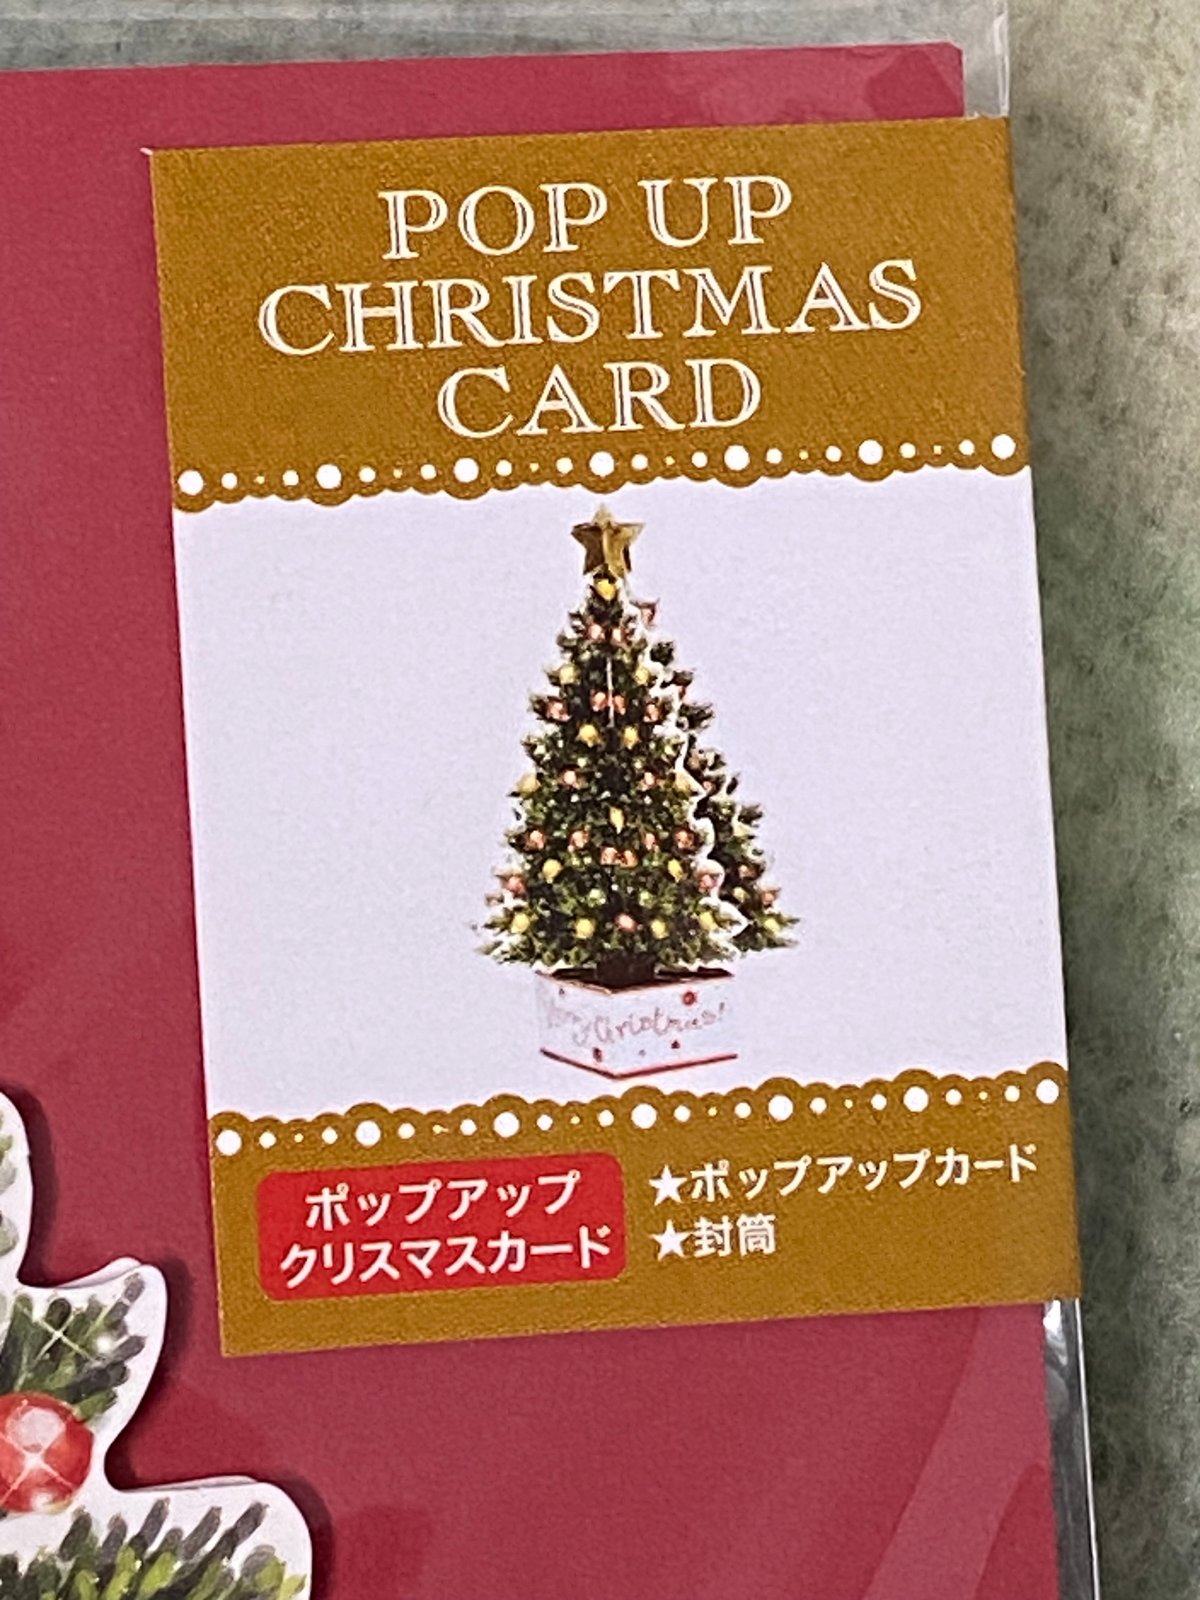 立体 クリスマスツリー ポップアップ クリスマスカード グリーティング 